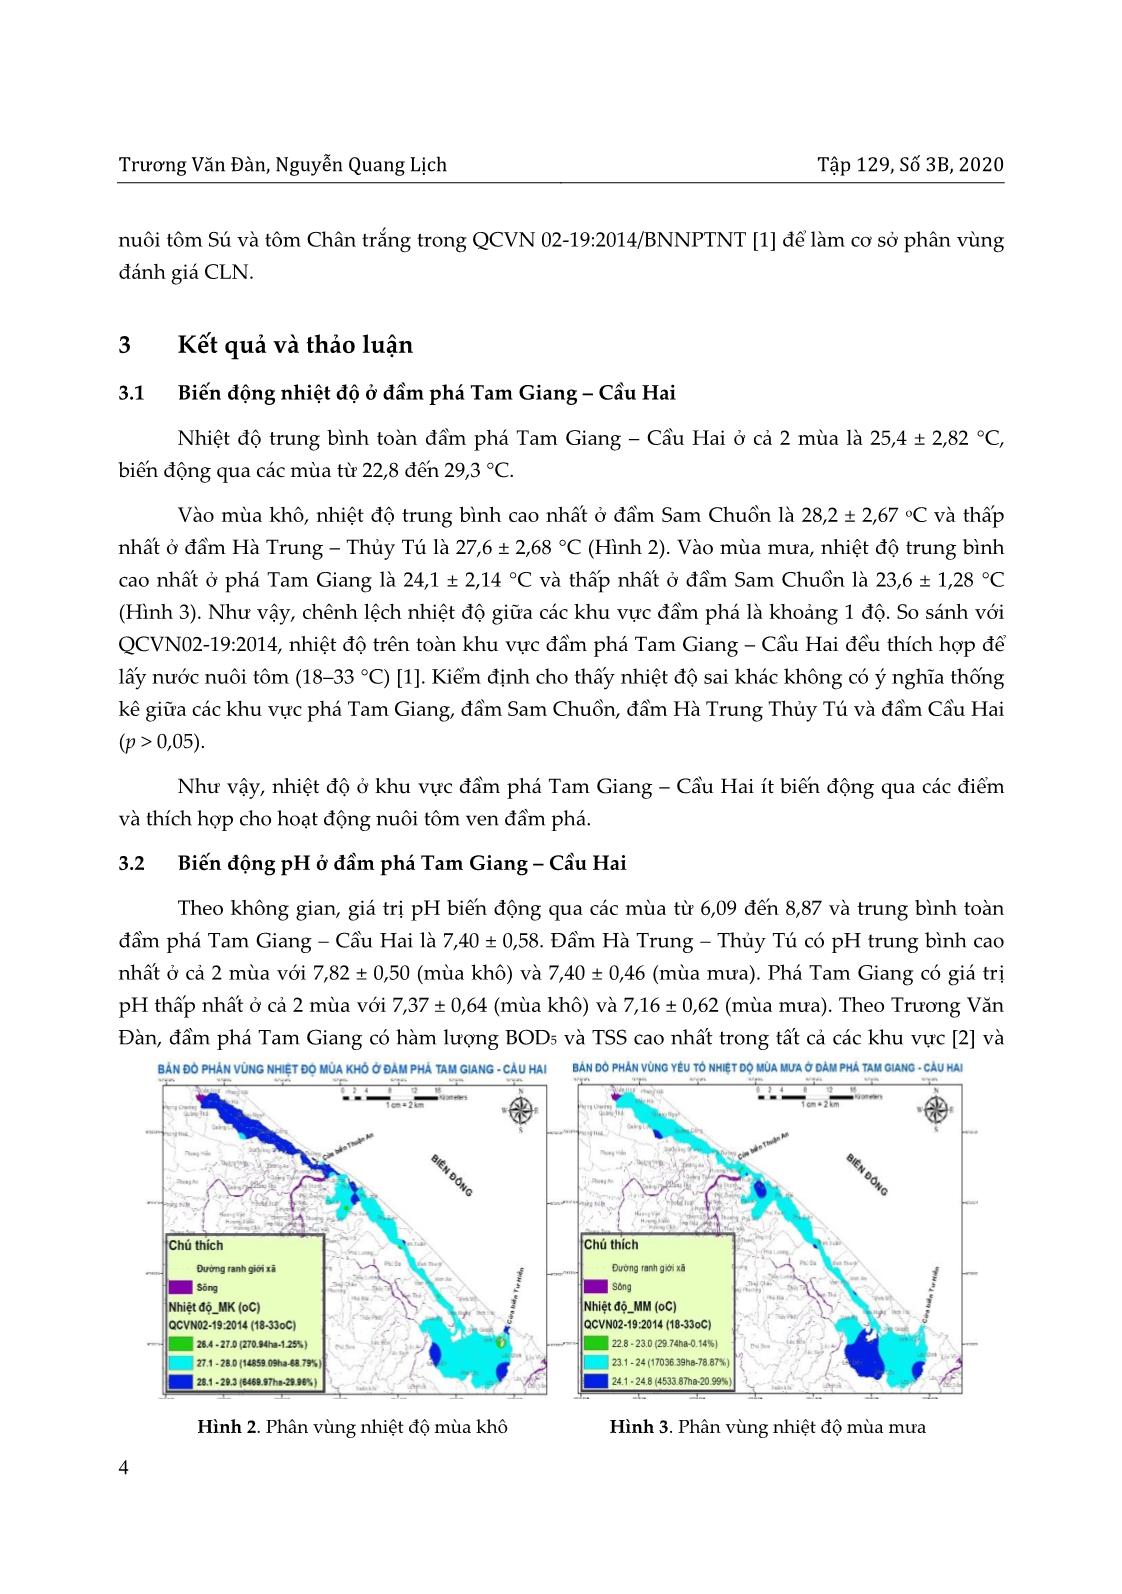 Phân vùng chất lượng nước cho nuôi tôm ở đầm phá Tam Giang – Cầu Hai, tỉnh Thừa Thiên Huế với sự hỗ trợ của GIS trang 4